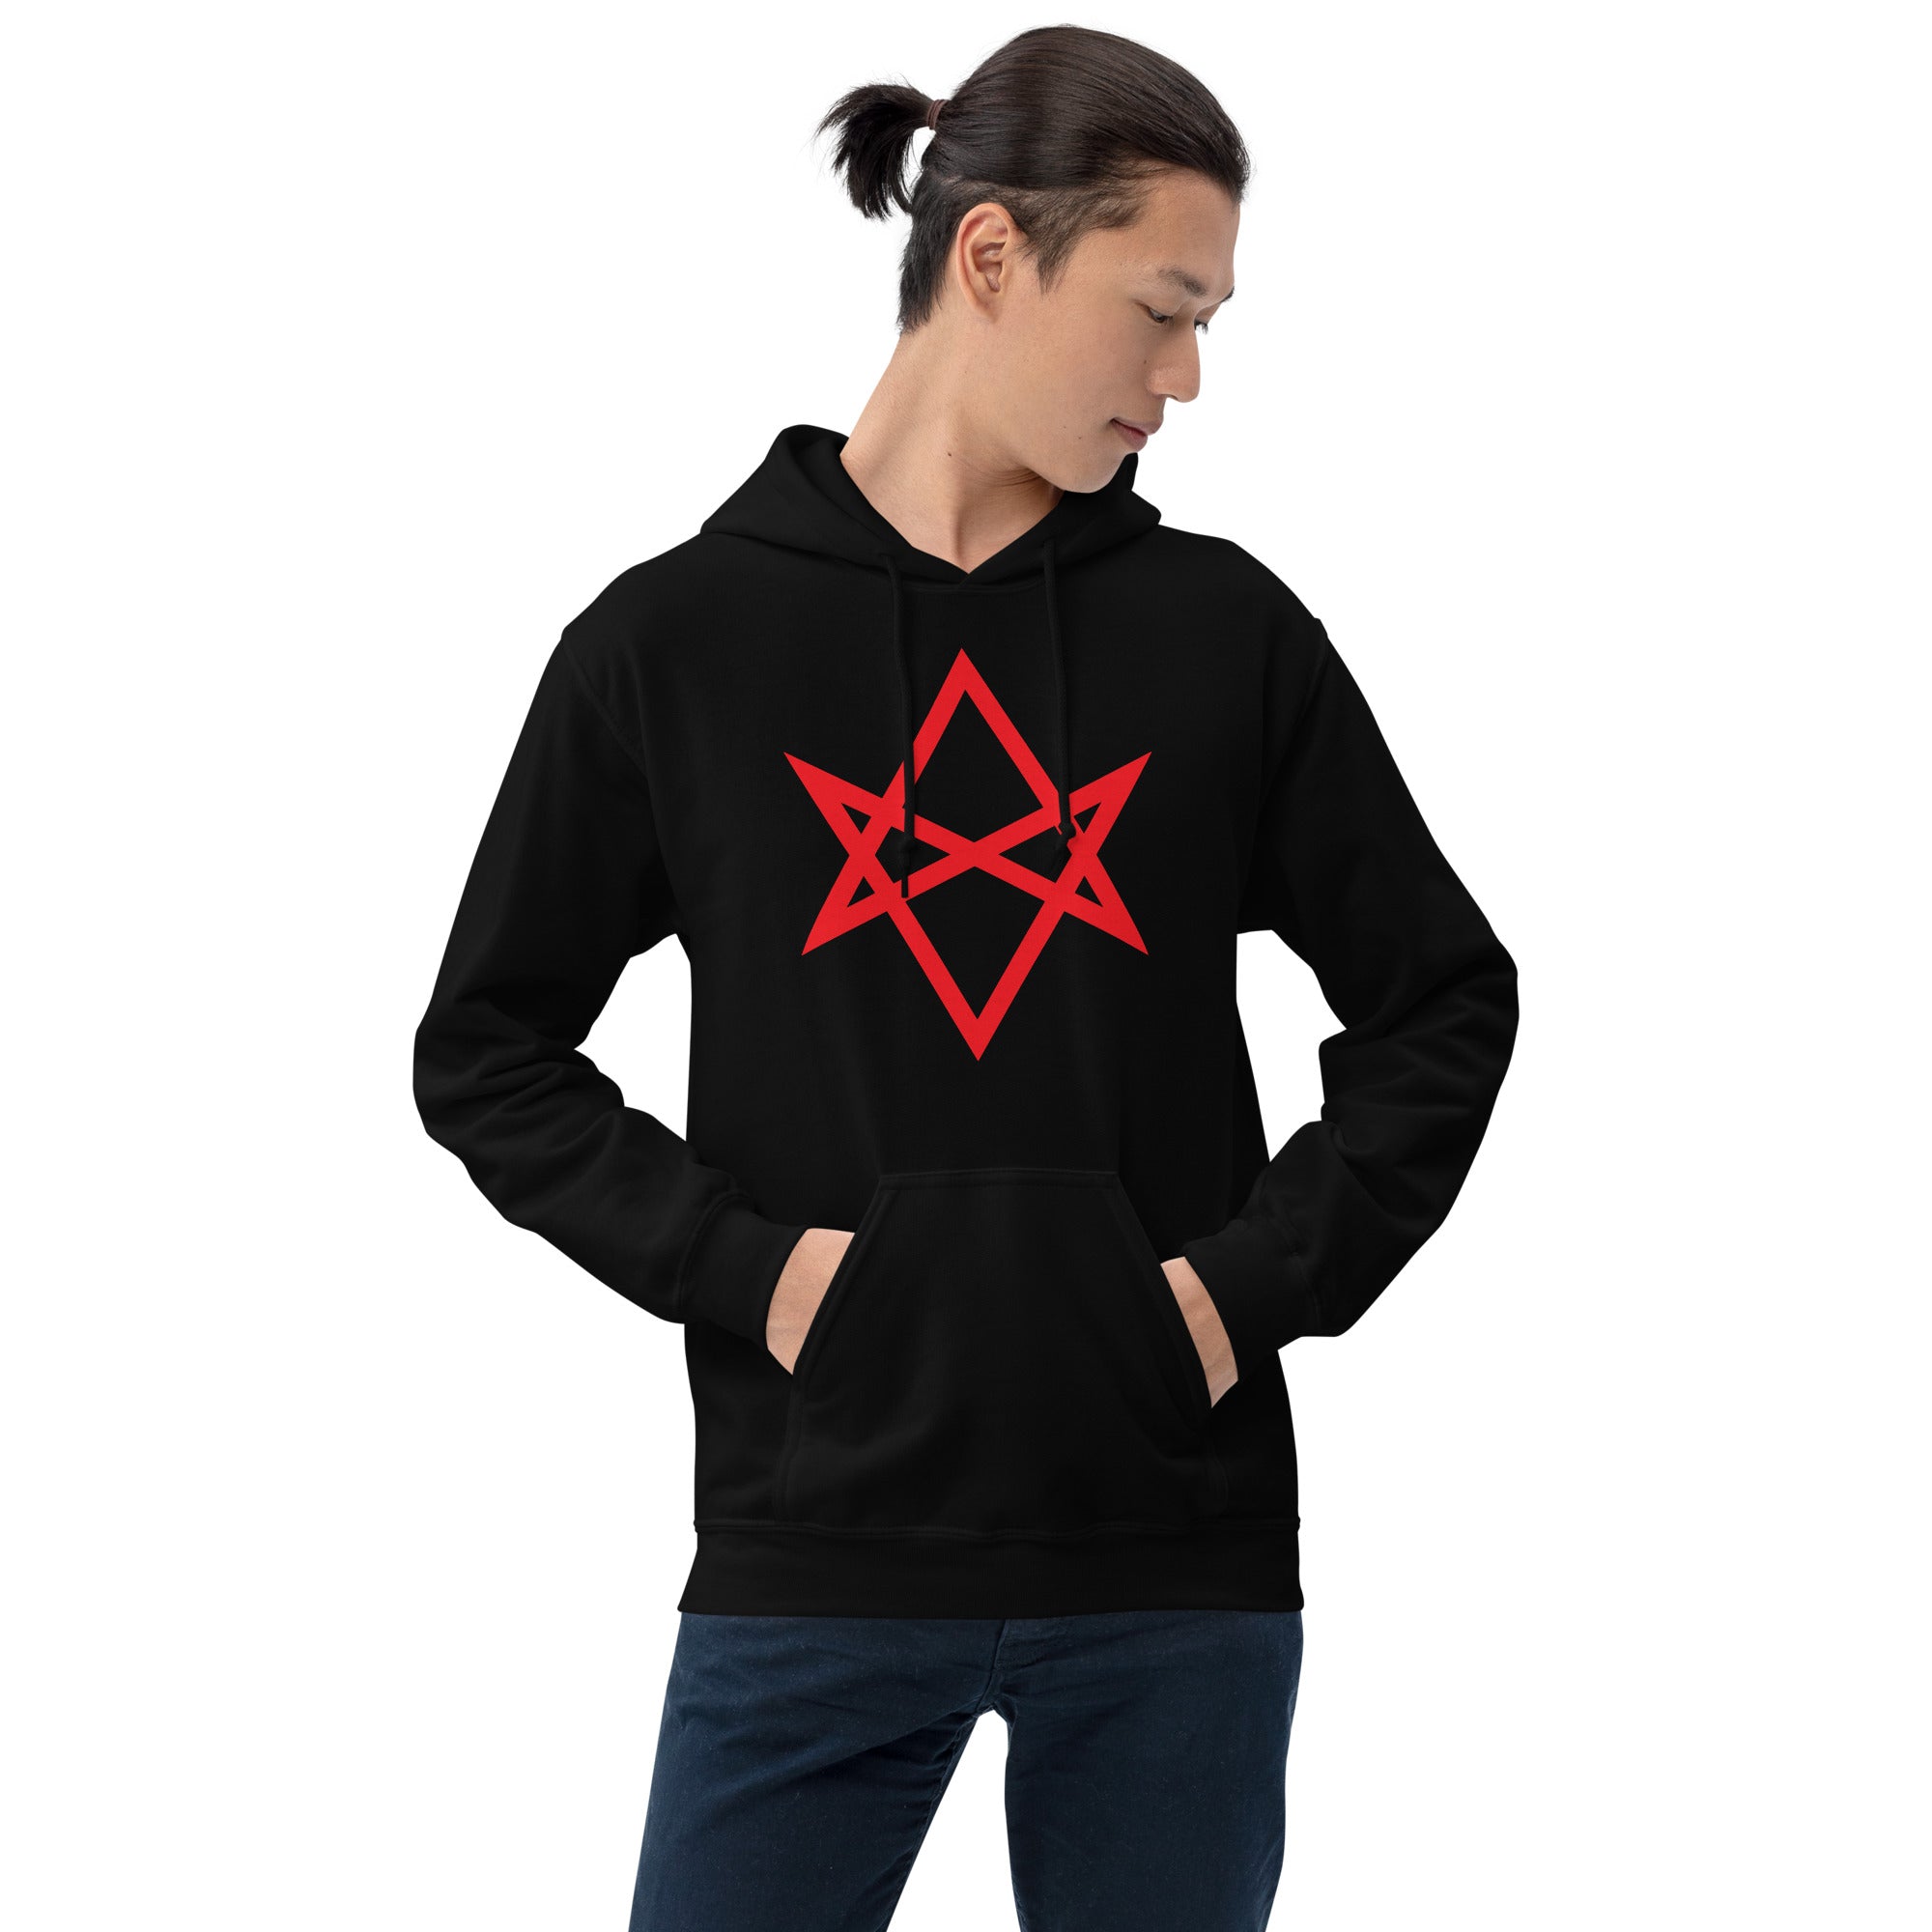 Red Unicursal Hexagram Six Pointed Star Unisex Hoodie Sweatshirt